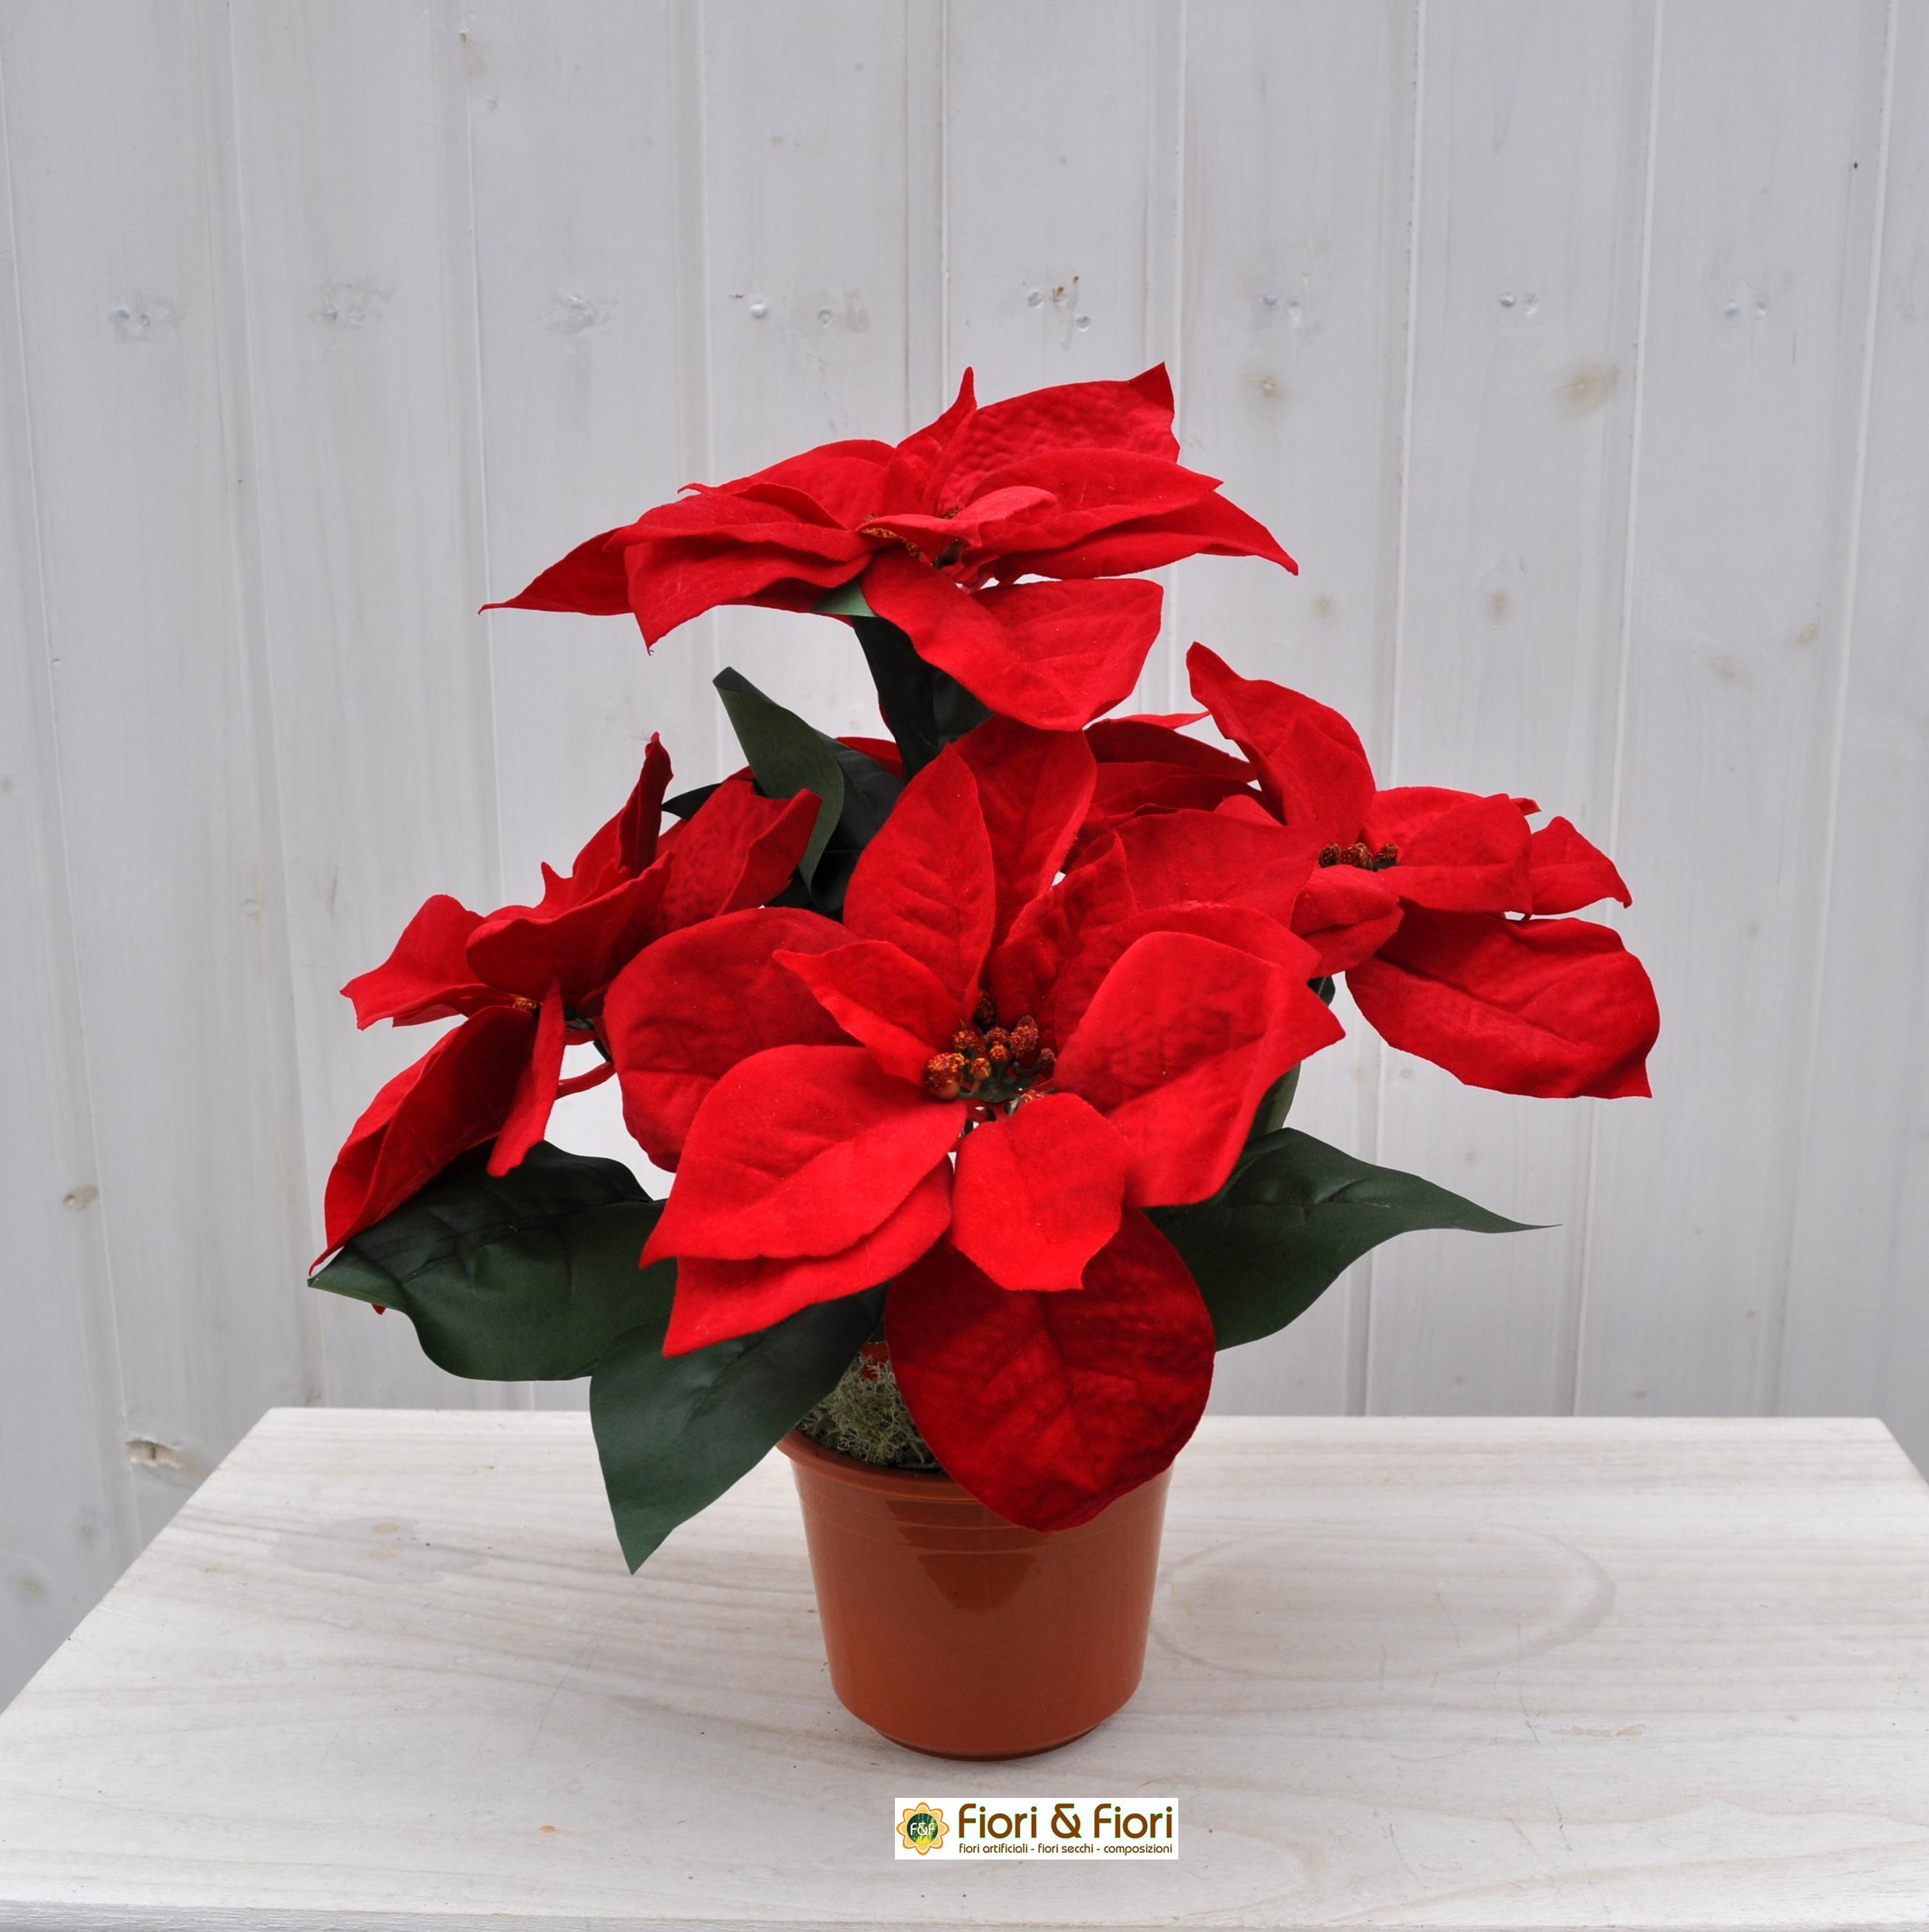 La Pianta Stella Di Natale.Stella Di Natale Artificiale Rossa Grande In Vaso Con Fiori In Tessuto